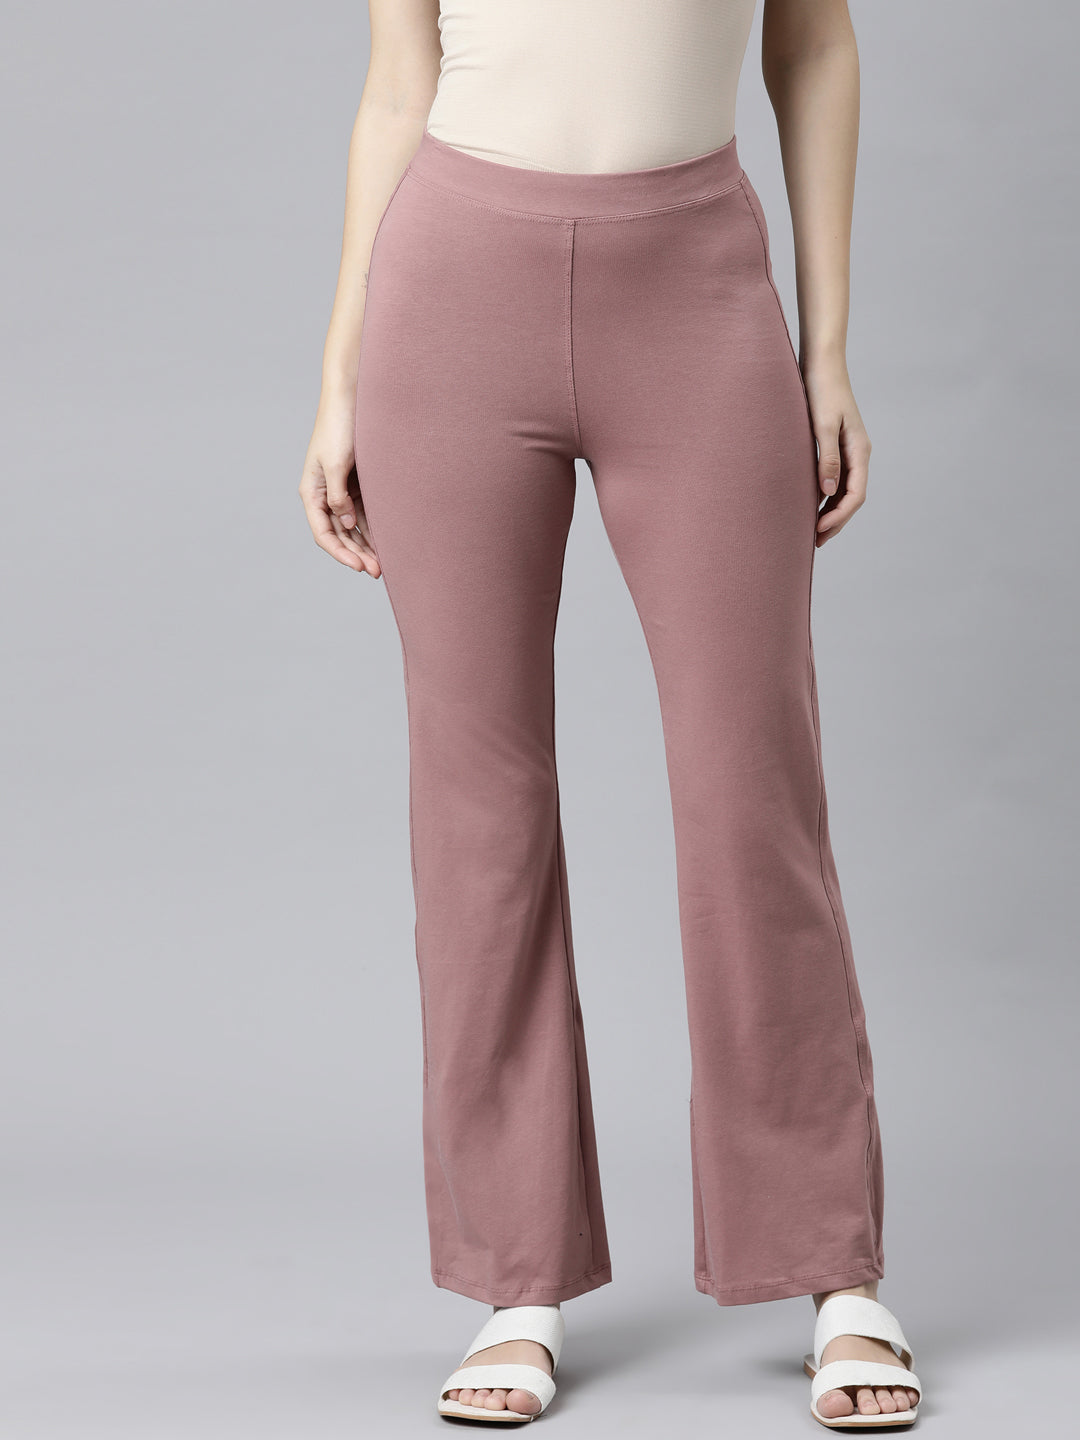 Shop Linen Cargo Jeans for Women Online | Go Colors